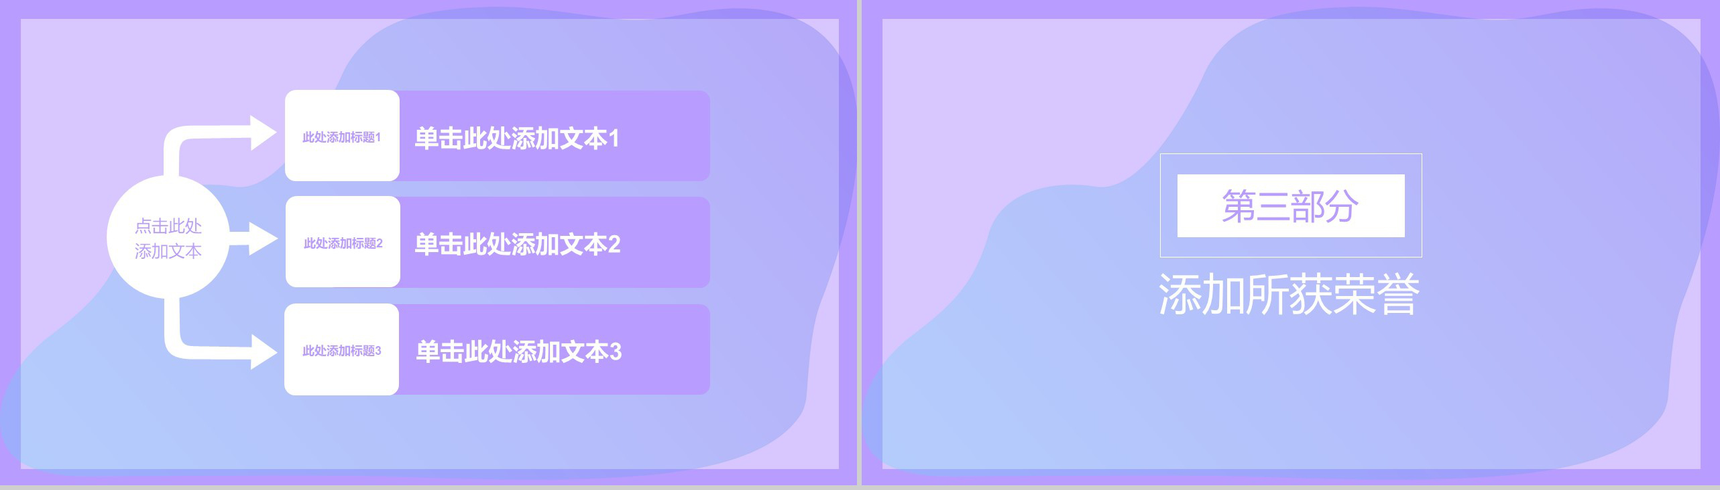 浅紫色唯美动画简约风个人求职简历PPT模板-5